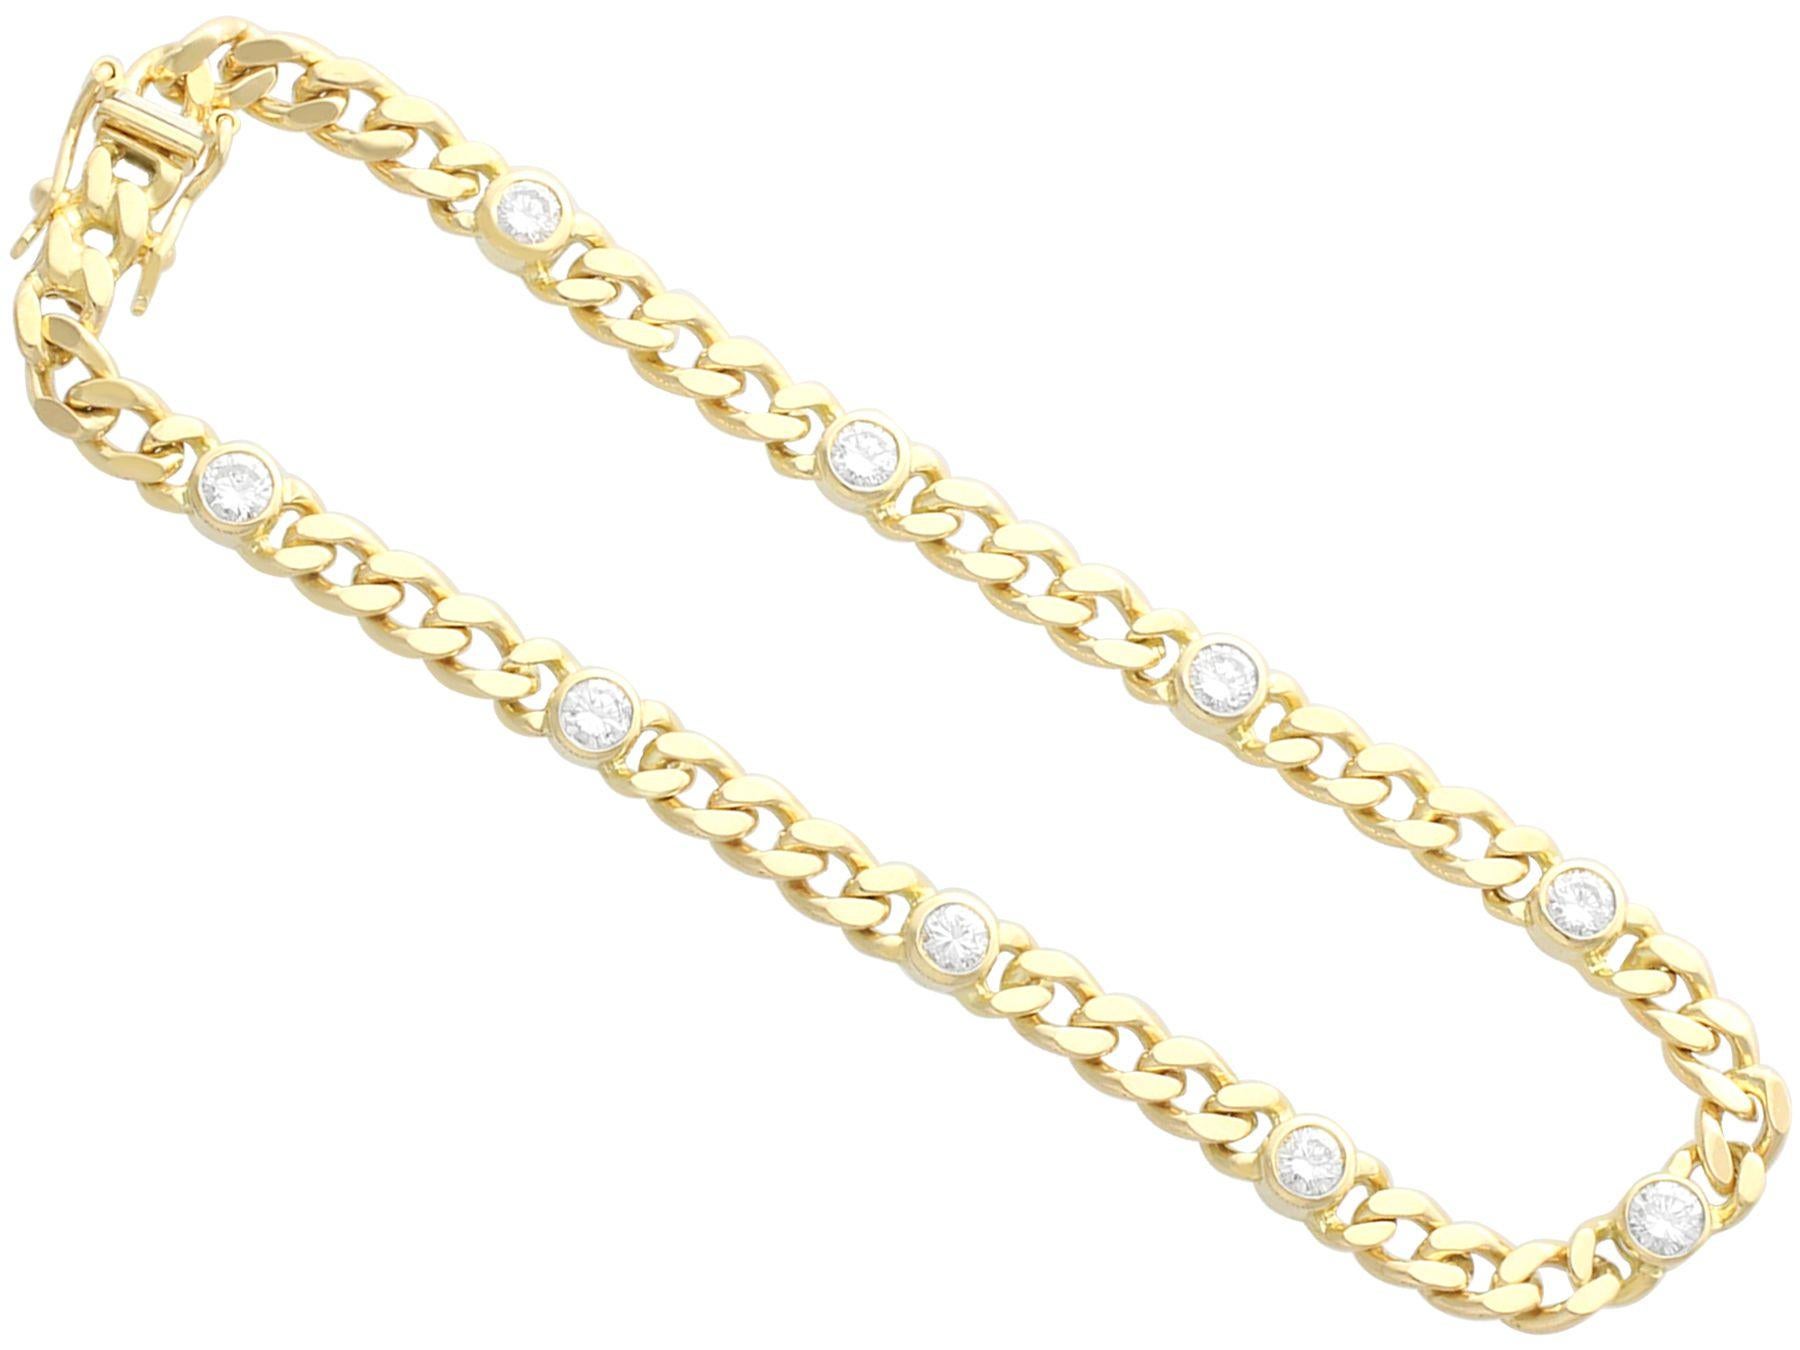 Un beau et impressionnant bracelet en diamant de 1,10 carat en or jaune 18 carats ; faisant partie de nos diverses collections de bijoux anciens et de bijoux de succession.

Ce bracelet vintage fin et impressionnant a été réalisé en or jaune 18